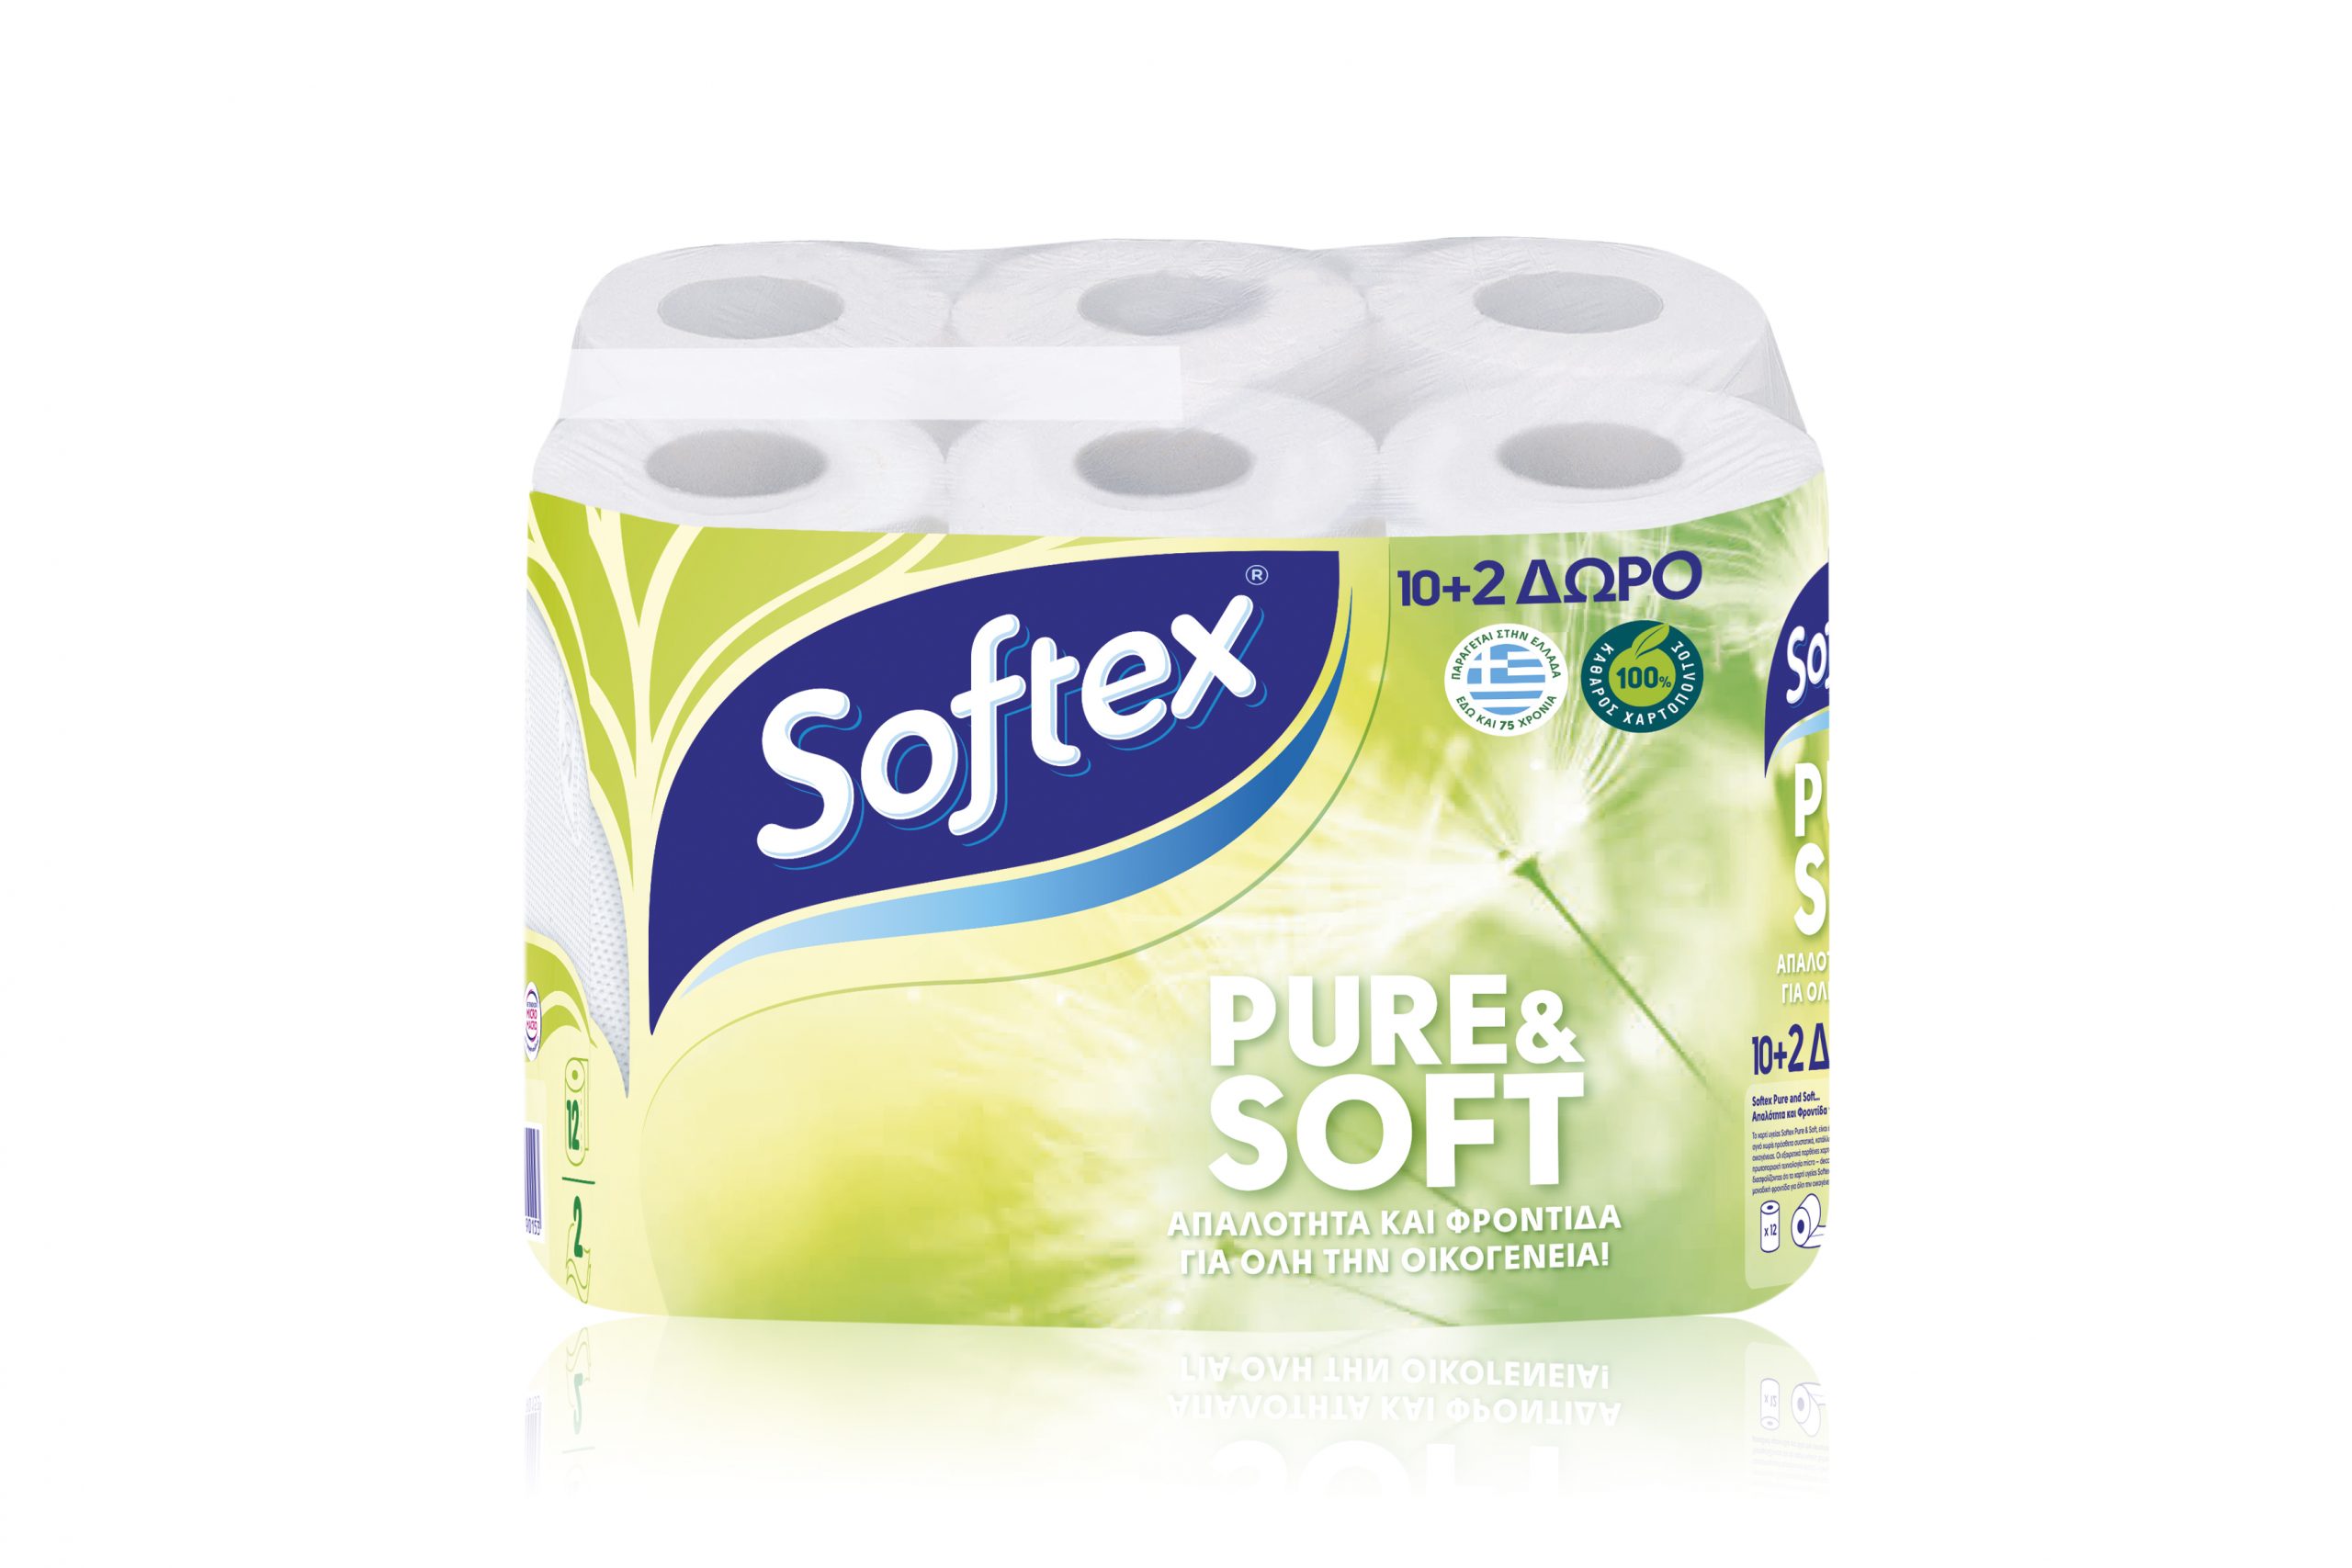 Hesje Met name Panda SOFTEX PURE & SOFT – Softex